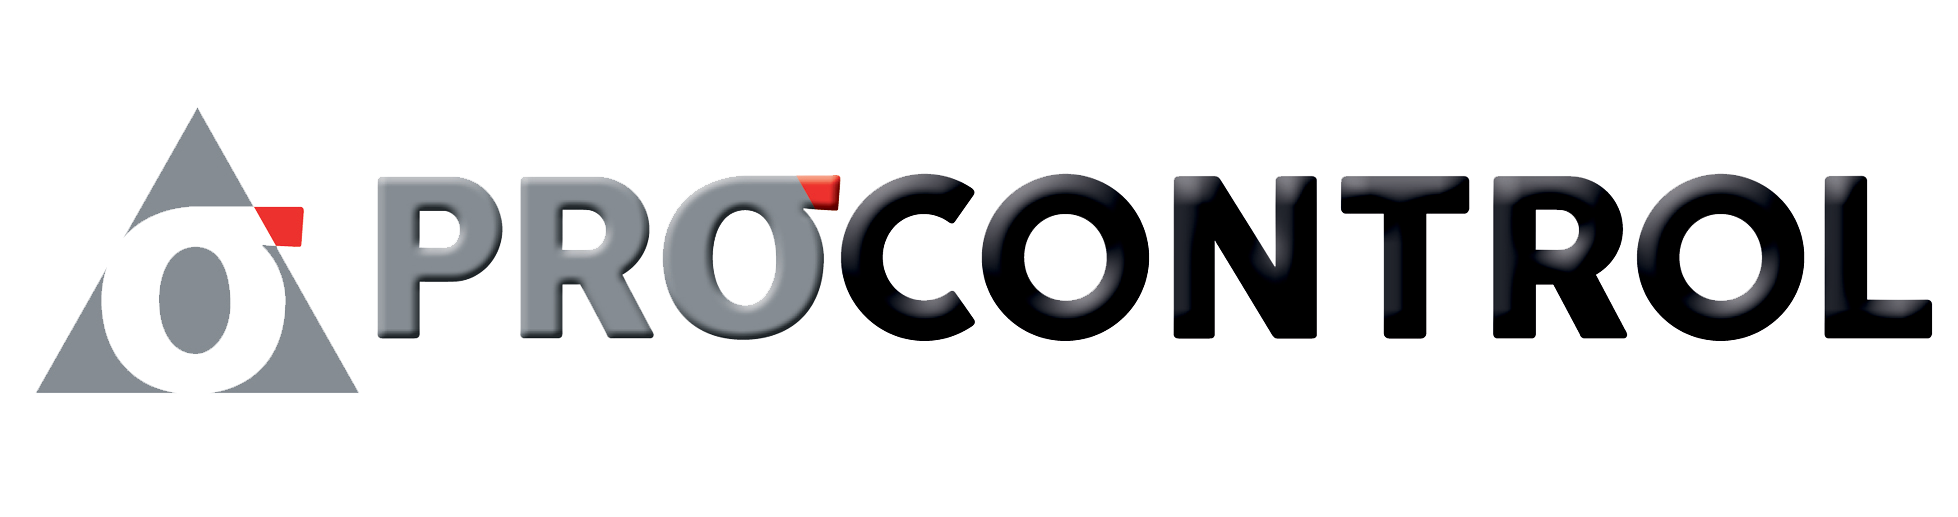 logo-procontrol-sito